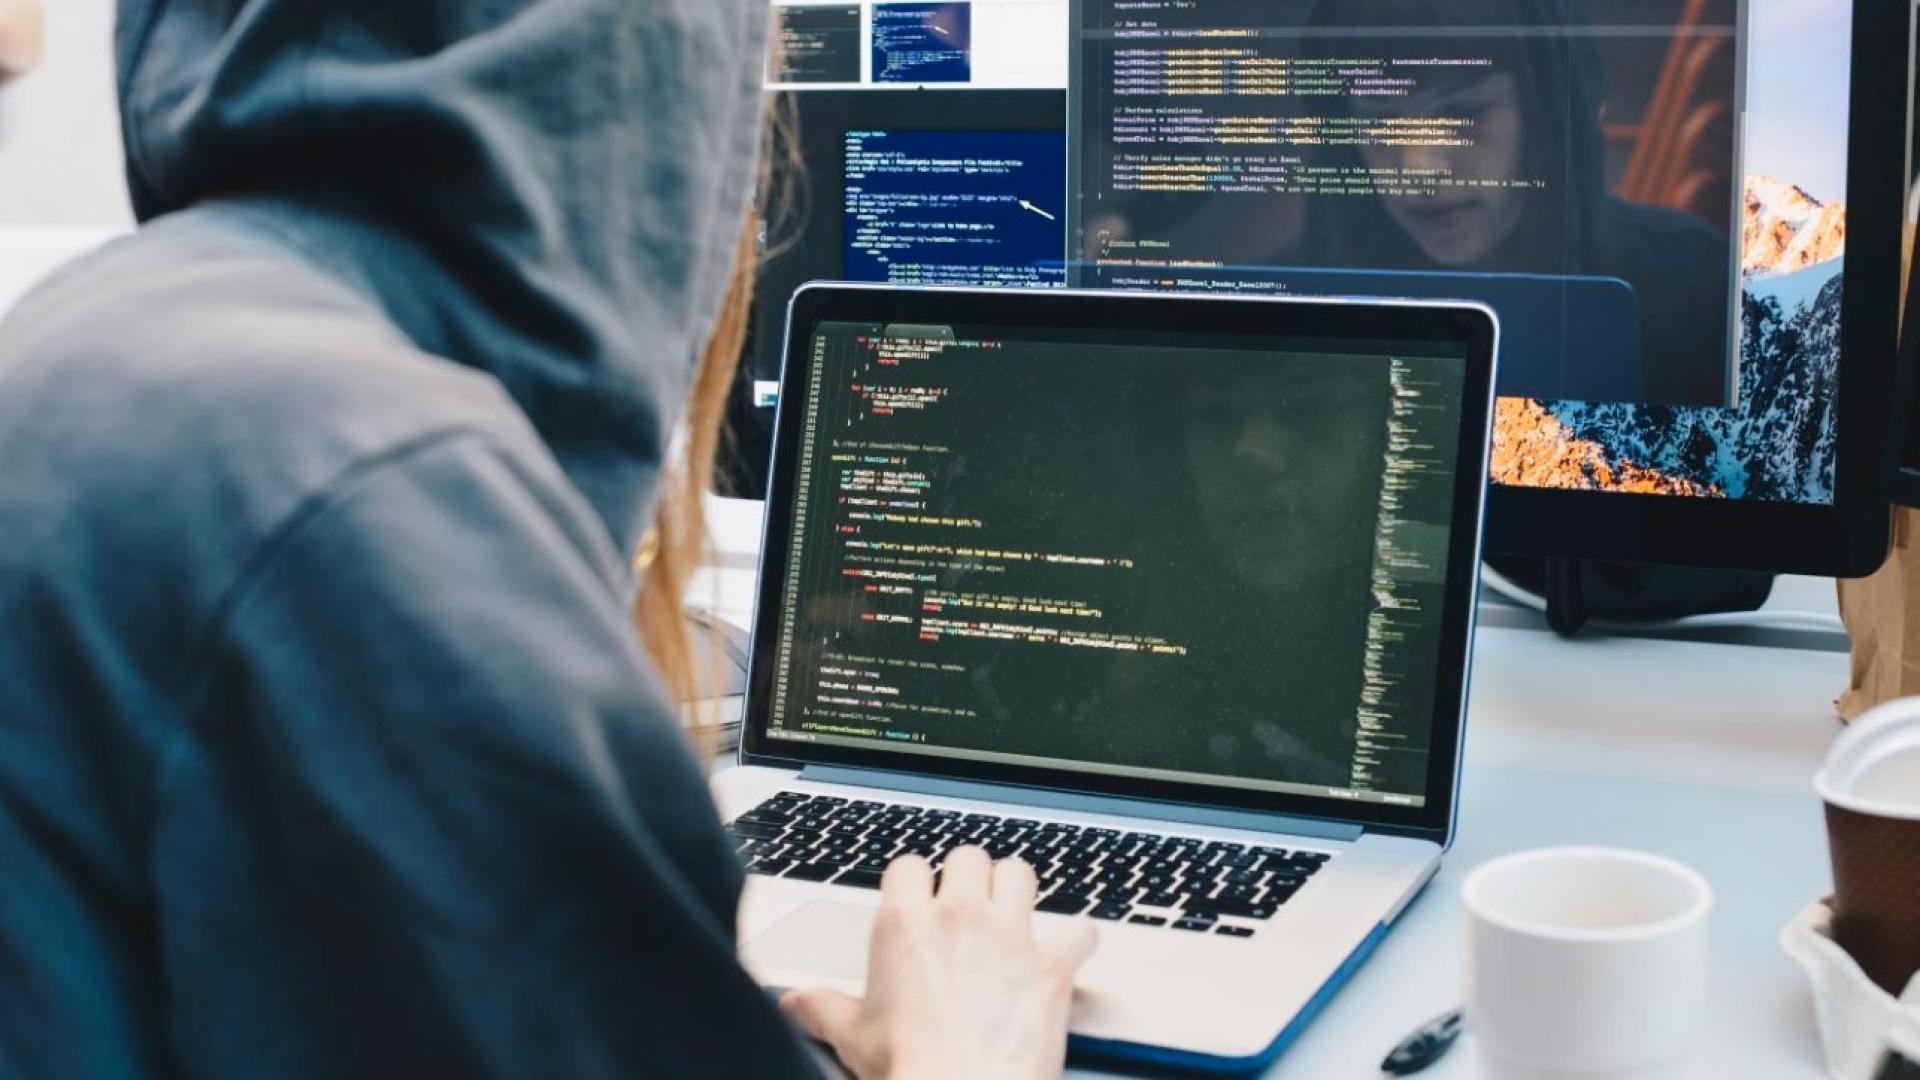 Auf dem Bild ist ein Hacker abgebildet, der einen Cyberangriff durchführt.